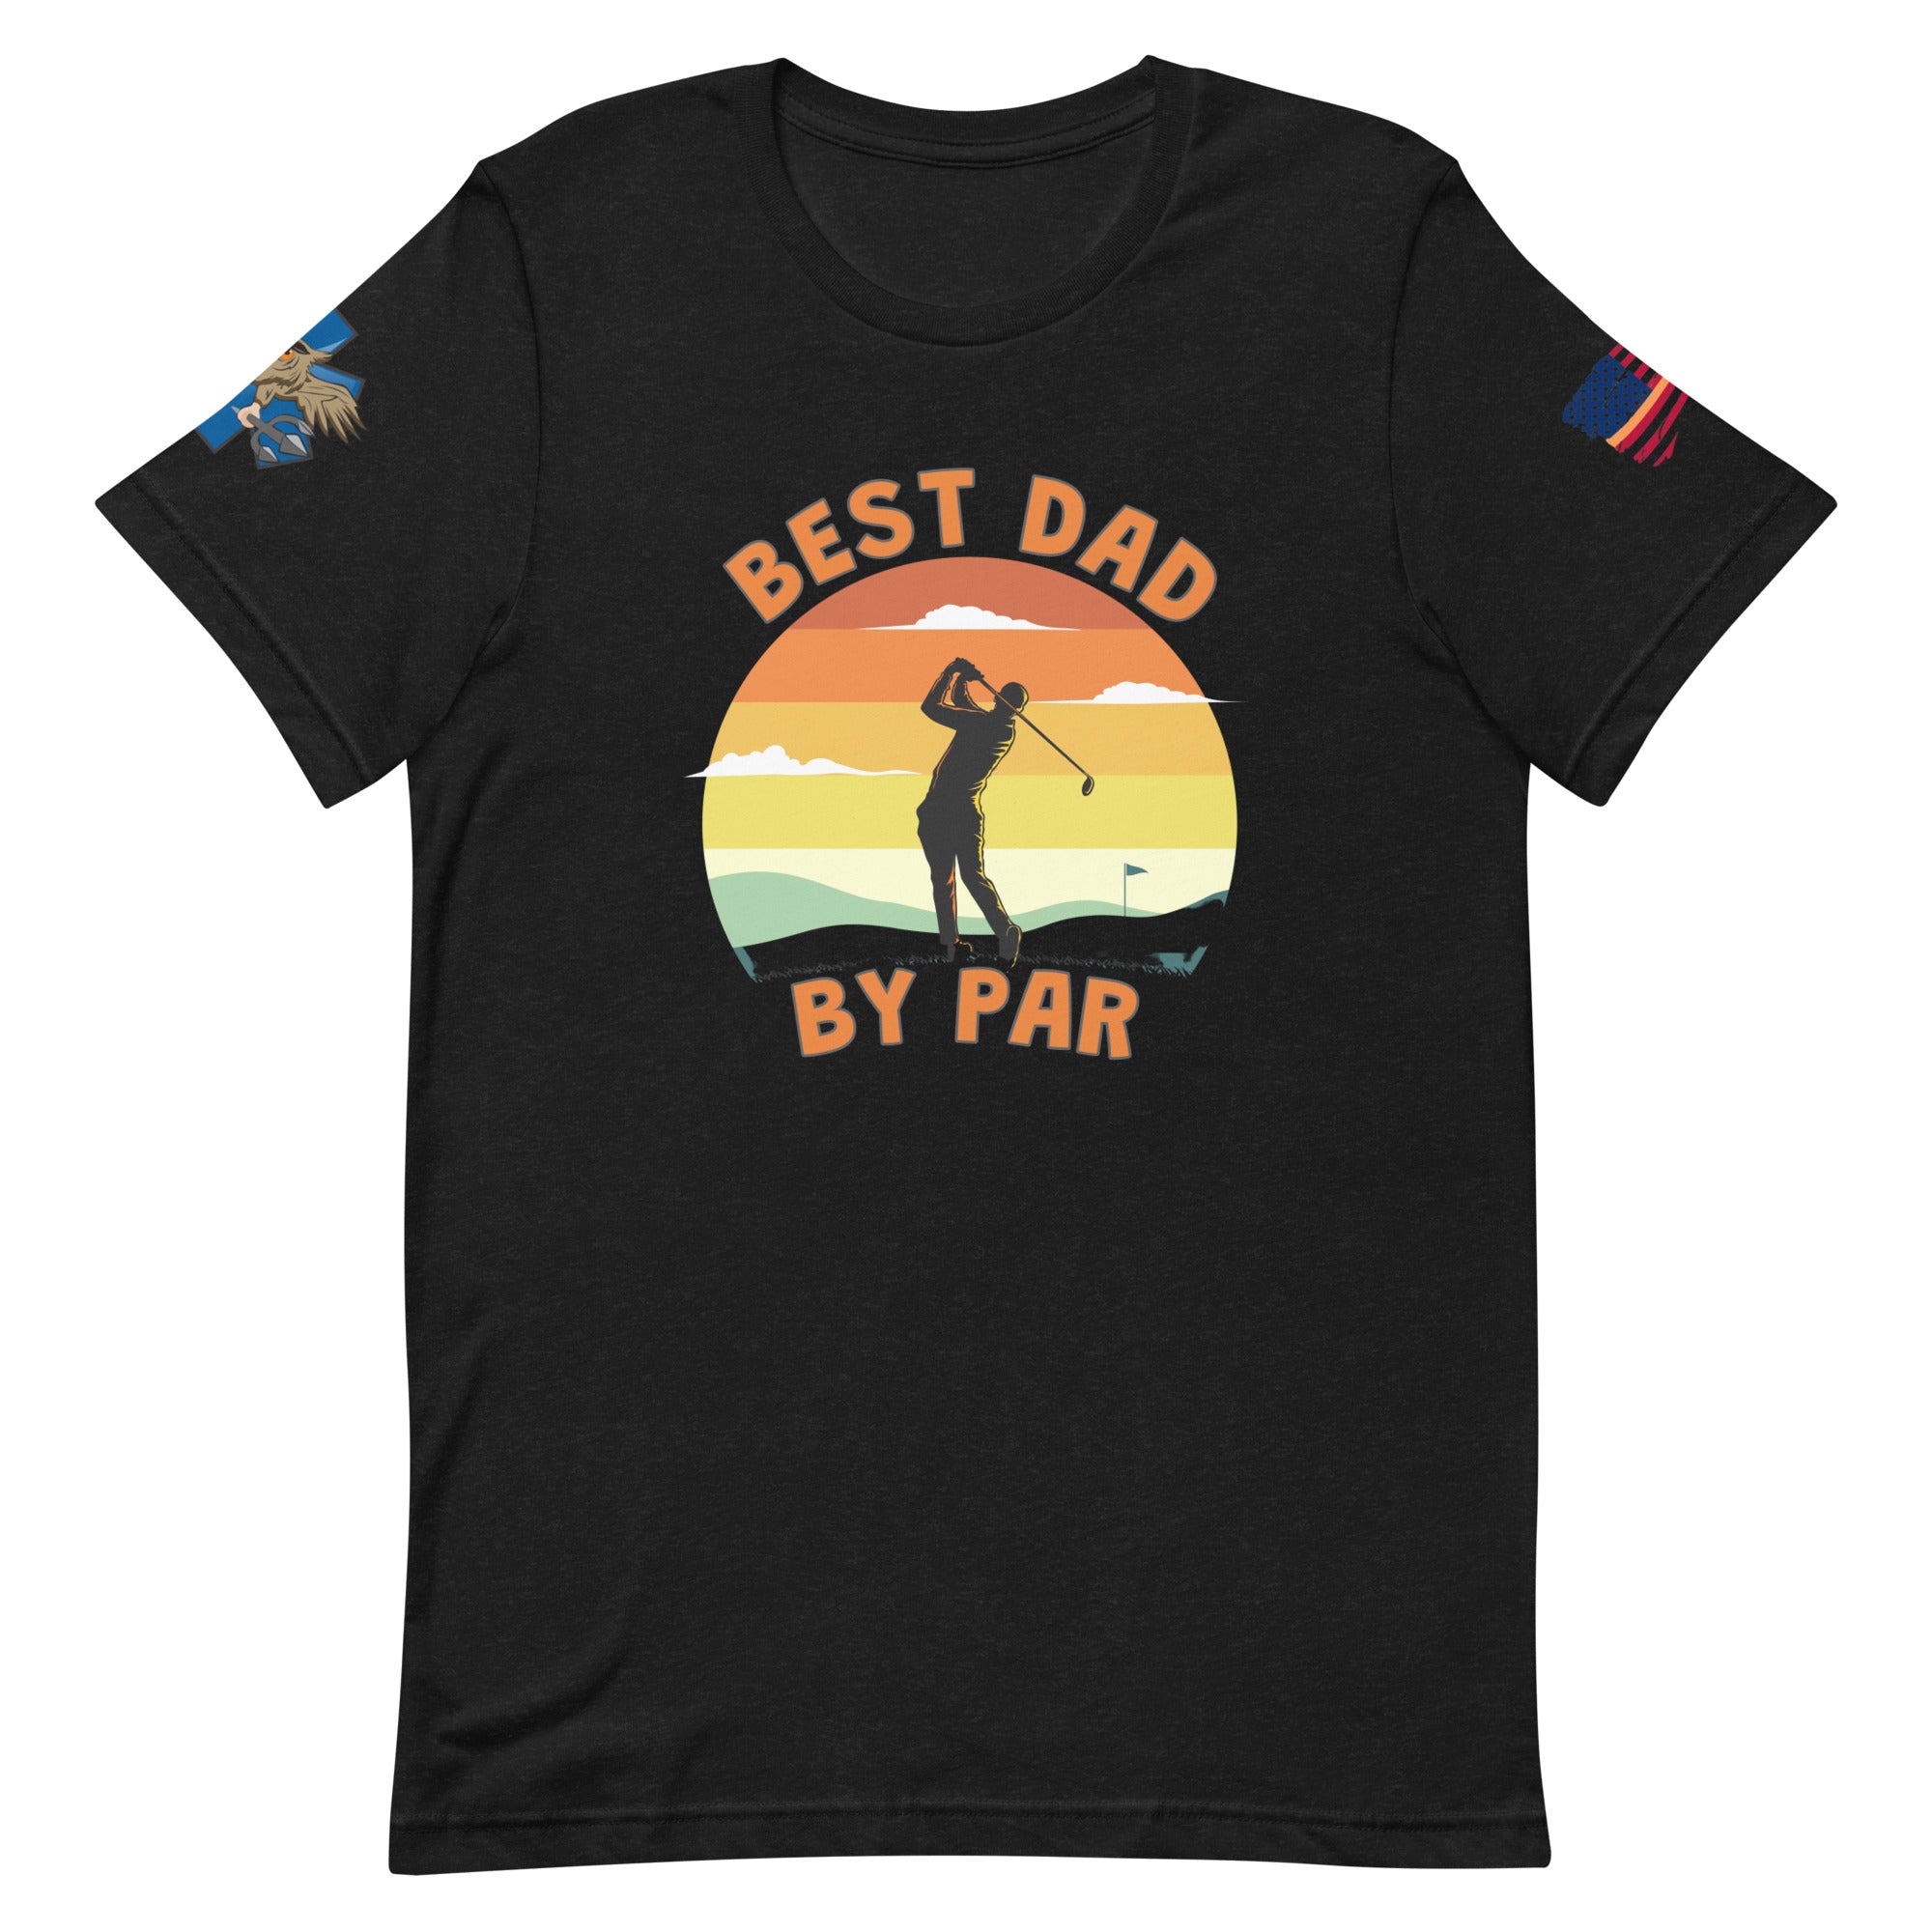 'Best Dad' t-shirt